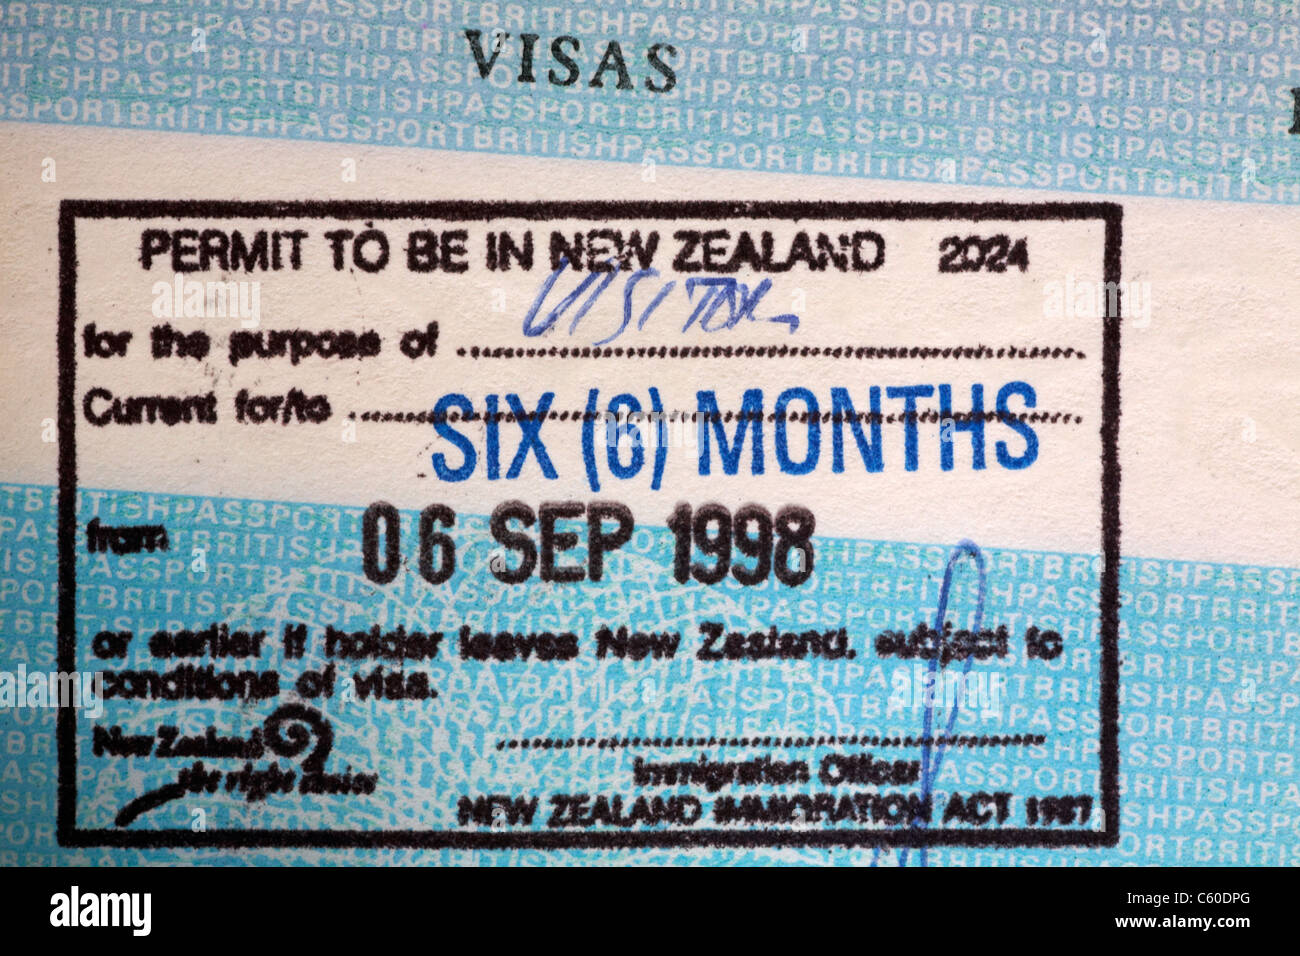 uk passport application from nz